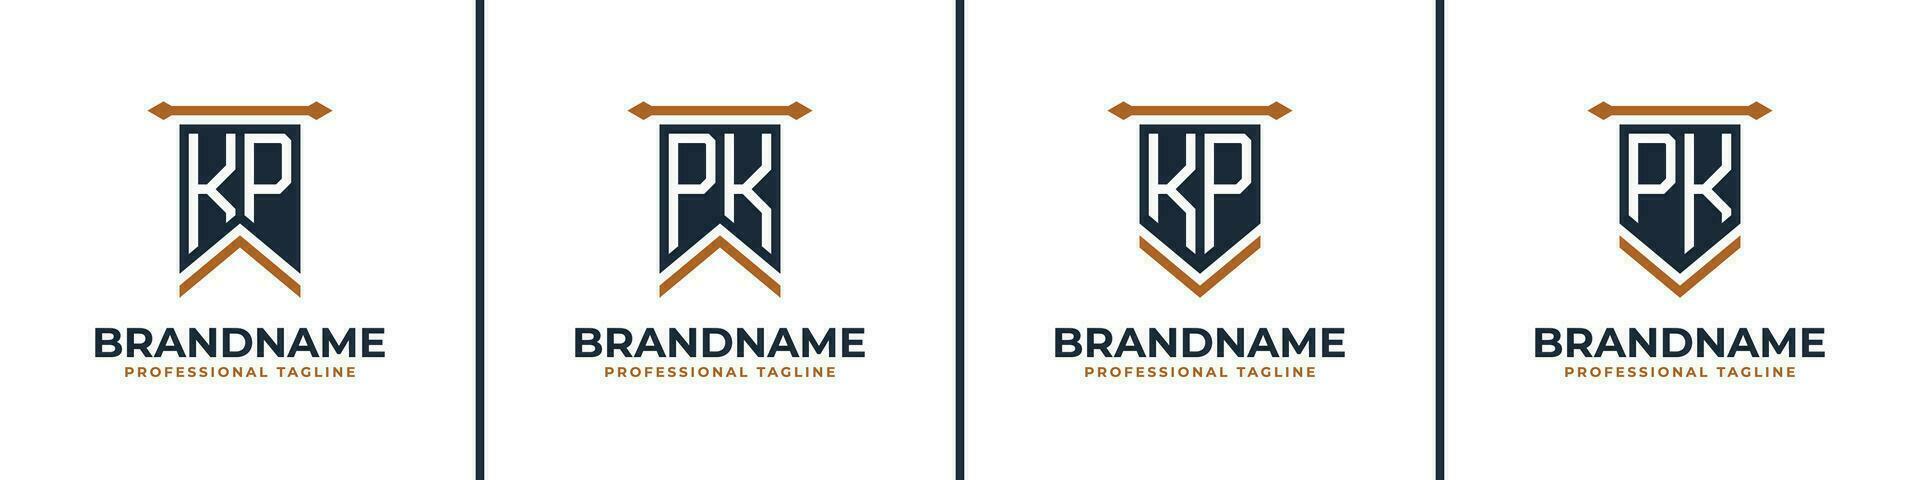 brev kp och pk vimpel flagga logotyp uppsättning, representera seger. lämplig för några företag med kp eller pk initialer. vektor